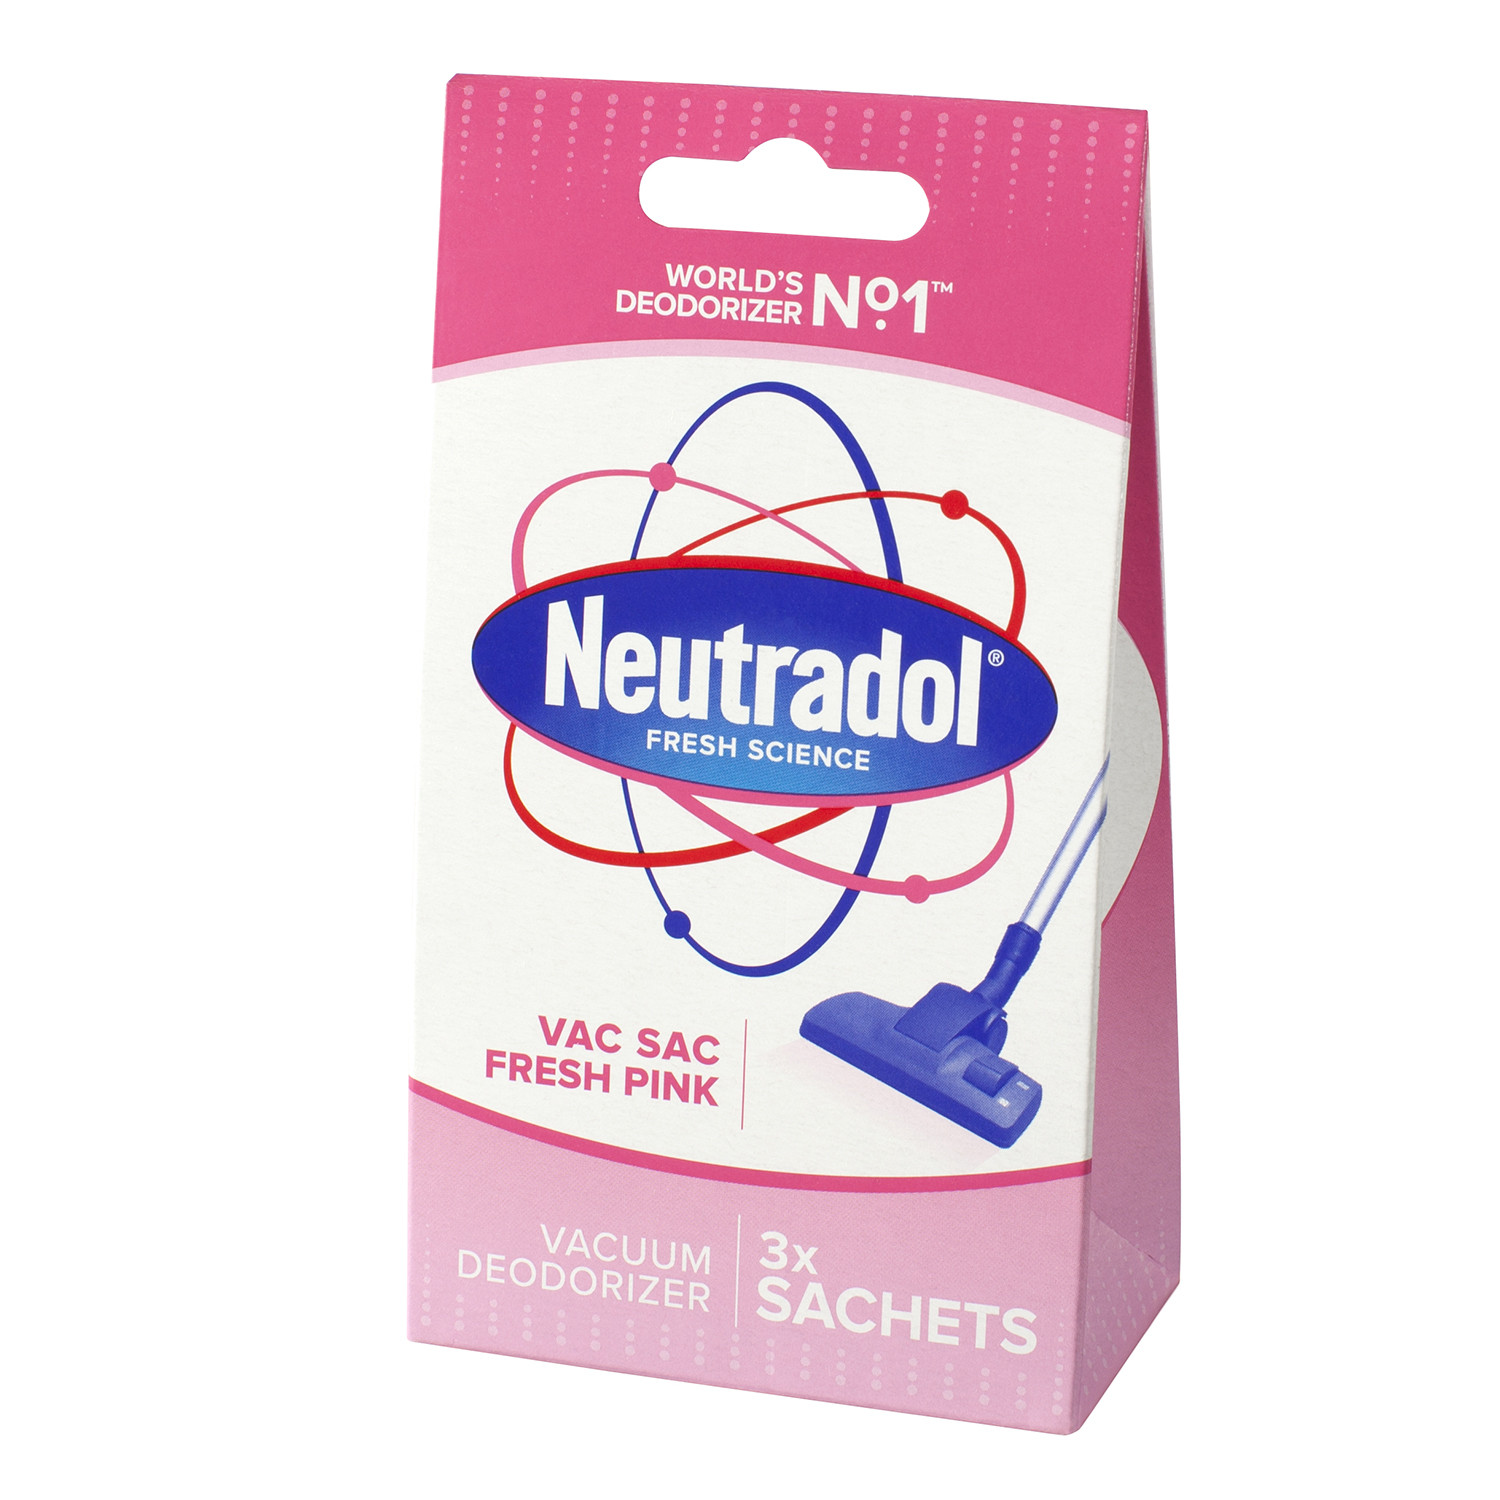 Neutradol Vacuum Sac Deodorizer 3 Pack Image 1